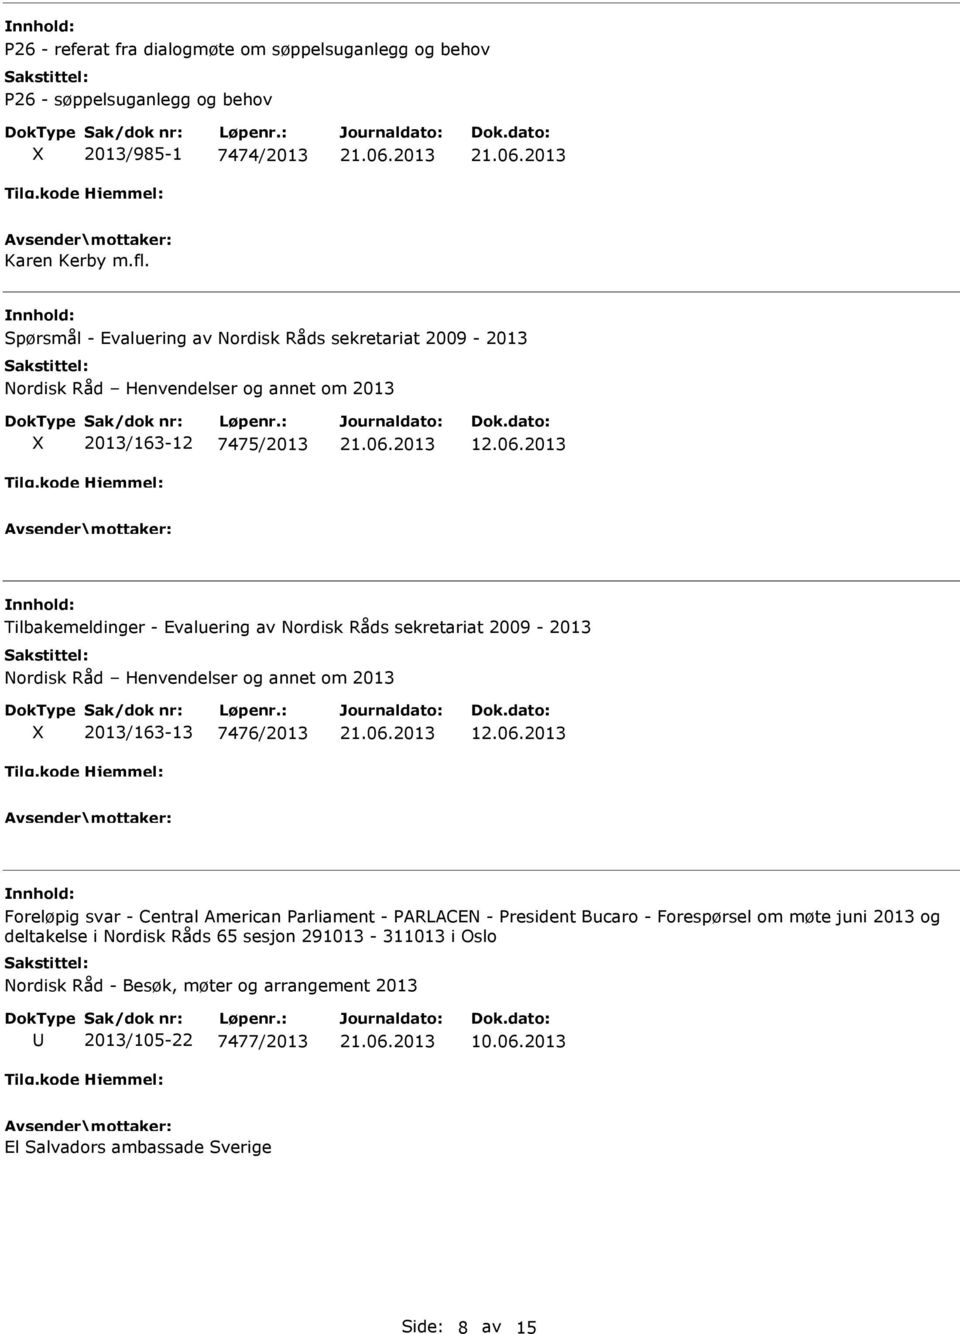 2013 Tilbakemeldinger - Evaluering av Nordisk Råds sekretariat 2009-2013 Nordisk Råd Henvendelser og annet om 2013 2013/163-13 7476/2013 12.06.